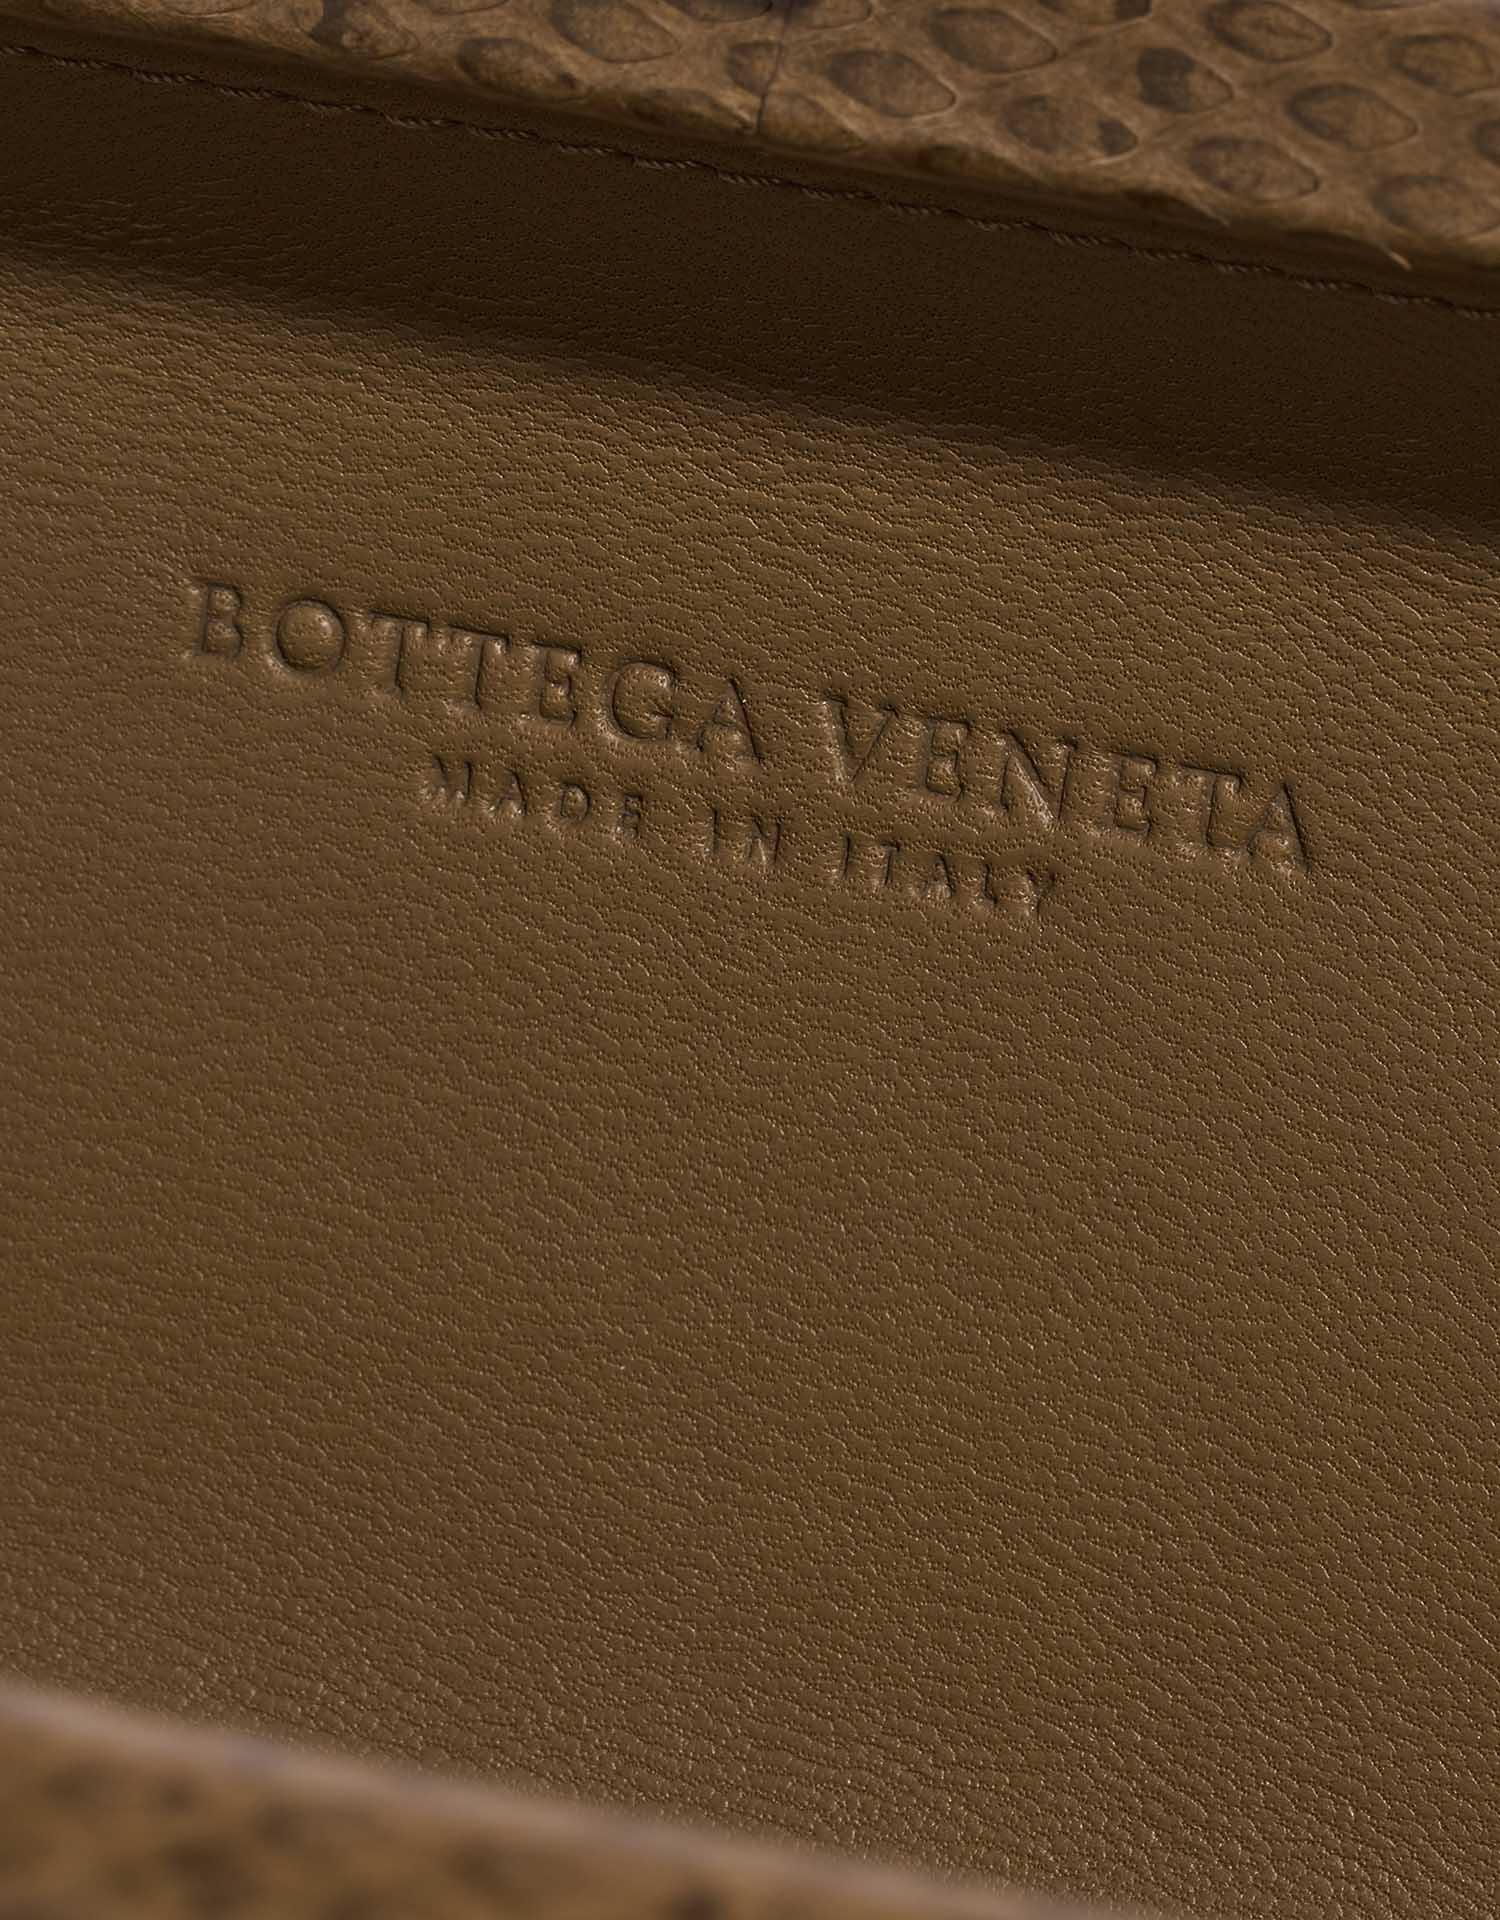 Gebrauchte Bottega Veneta Tasche Knot Clutch Python Braun Braun Logo | Verkaufen Sie Ihre Designer-Tasche auf Saclab.com